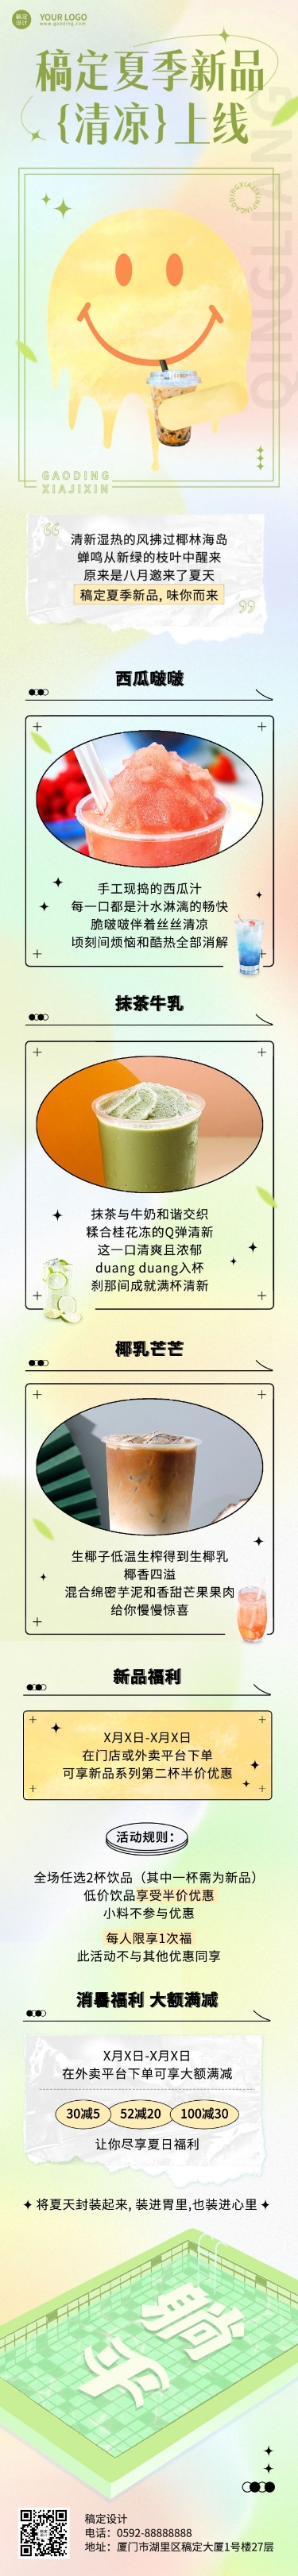 弥散风夏季营销奶茶饮品新品上市活动营销文章长图